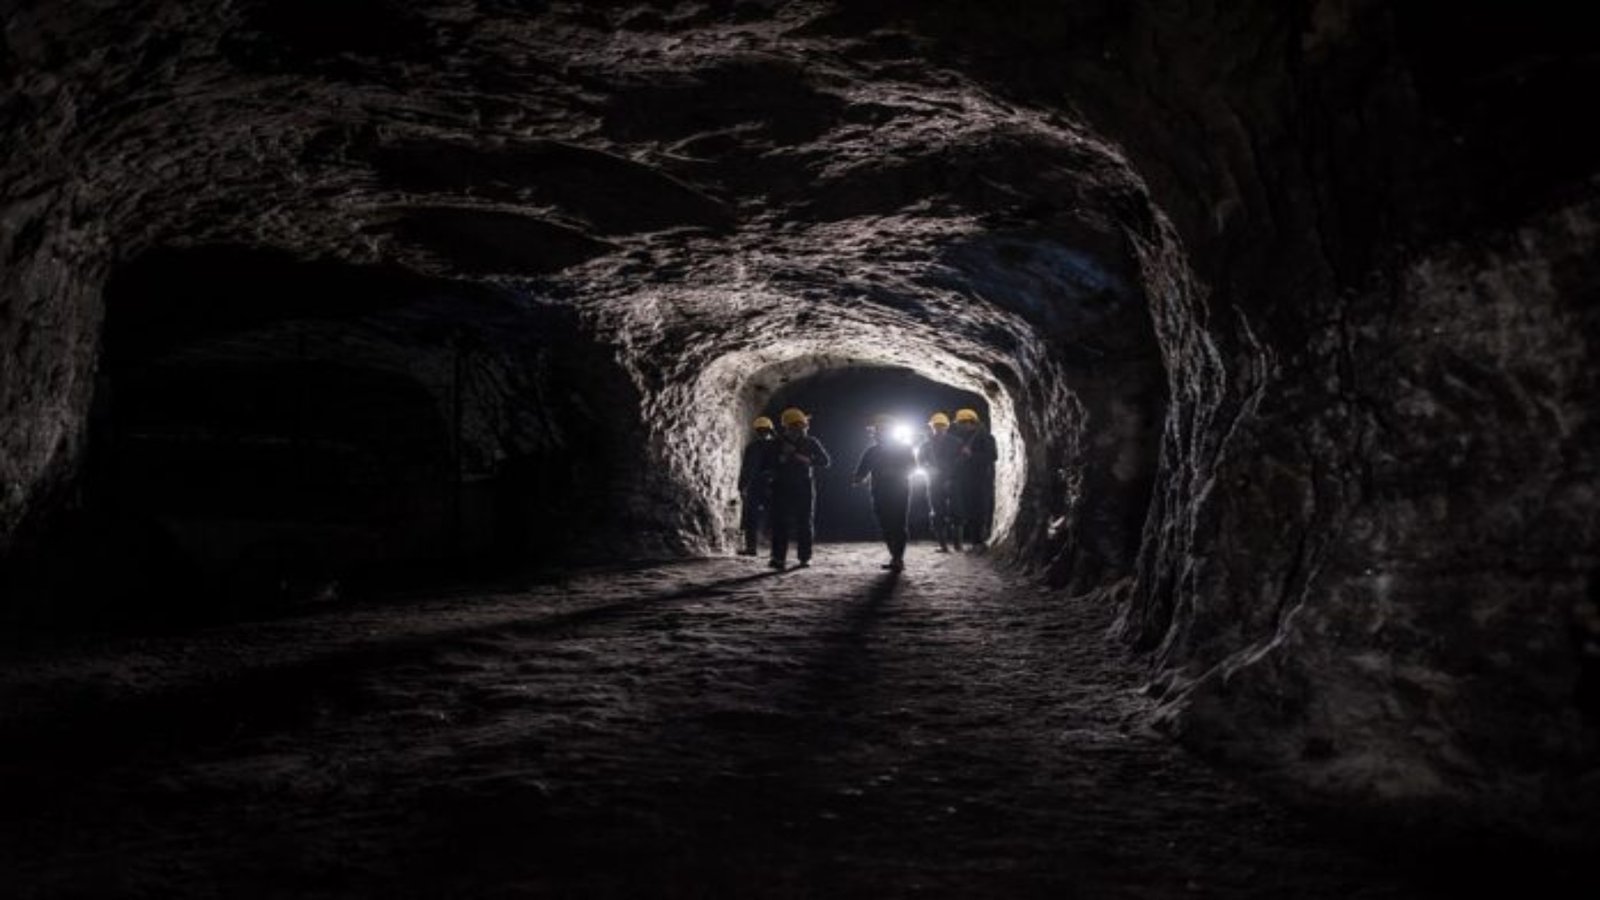 11 people died from gas leak in coal mine near Quetta